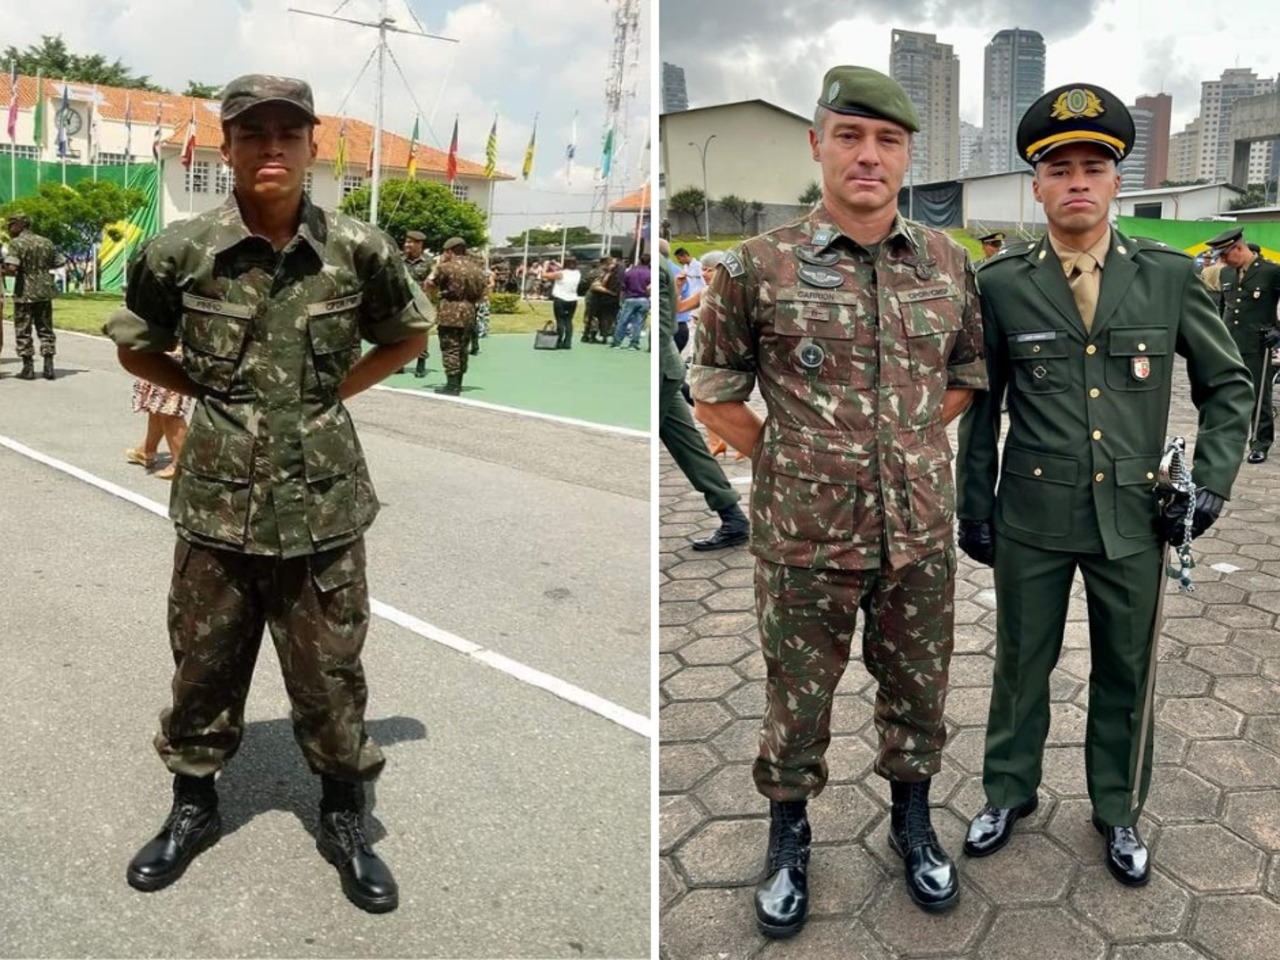 Exército abre inscrições para Oficial, Sargento, Cabo Técnico temporários  da 7ª RM